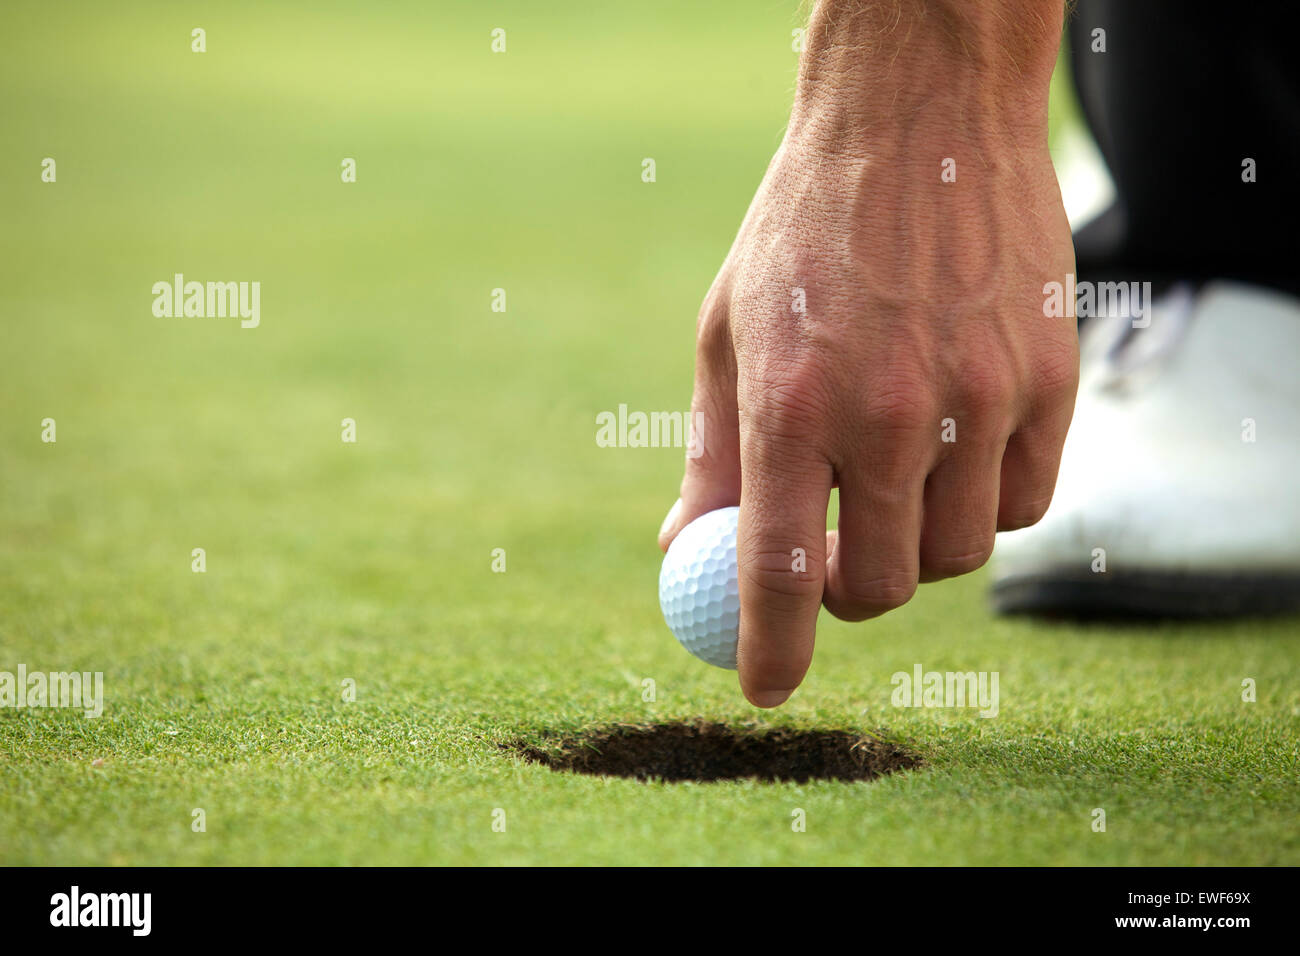 Personne tenant balle de golf, close-up Banque D'Images